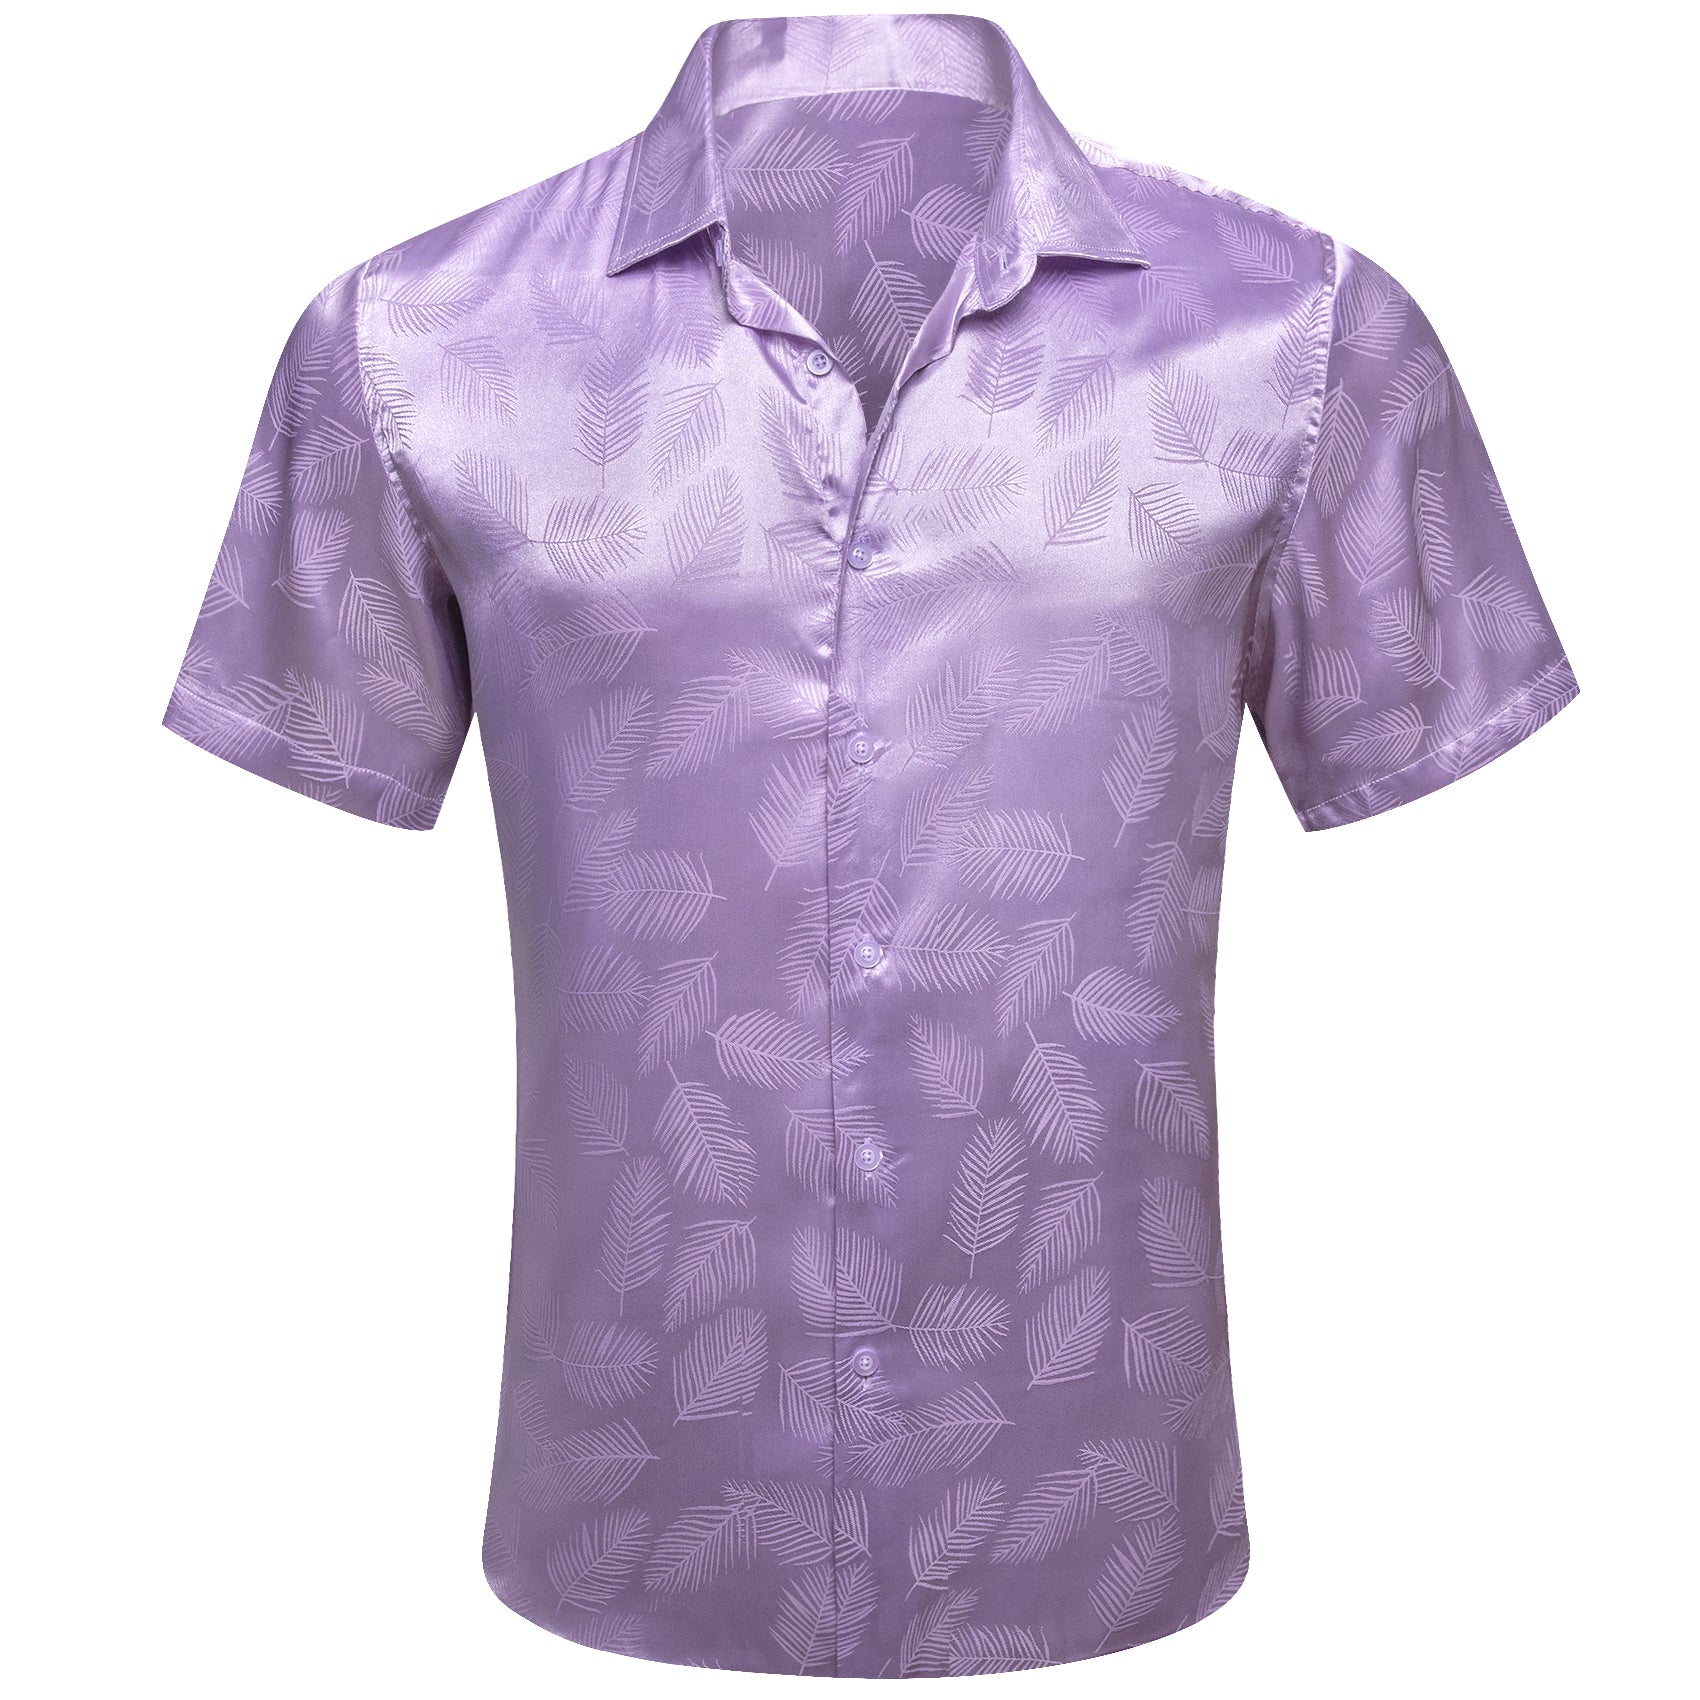 barry wang light purple shirt